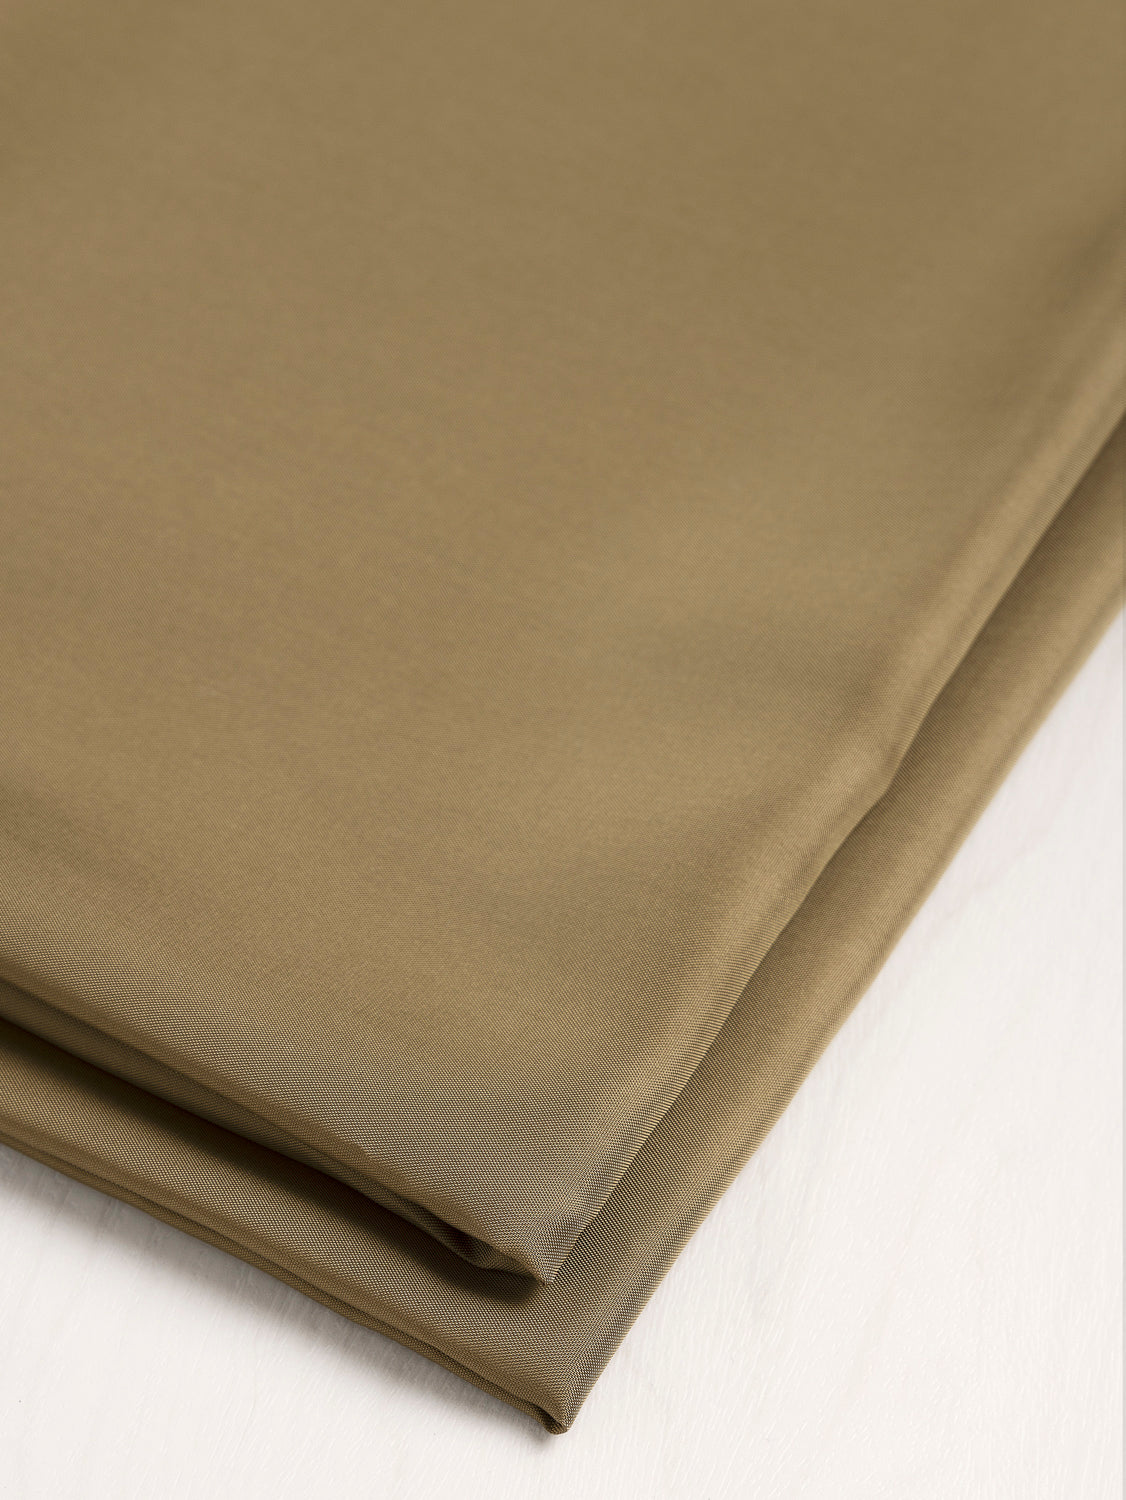 Bemberg Cupro Lining - Moss | Core Fabrics